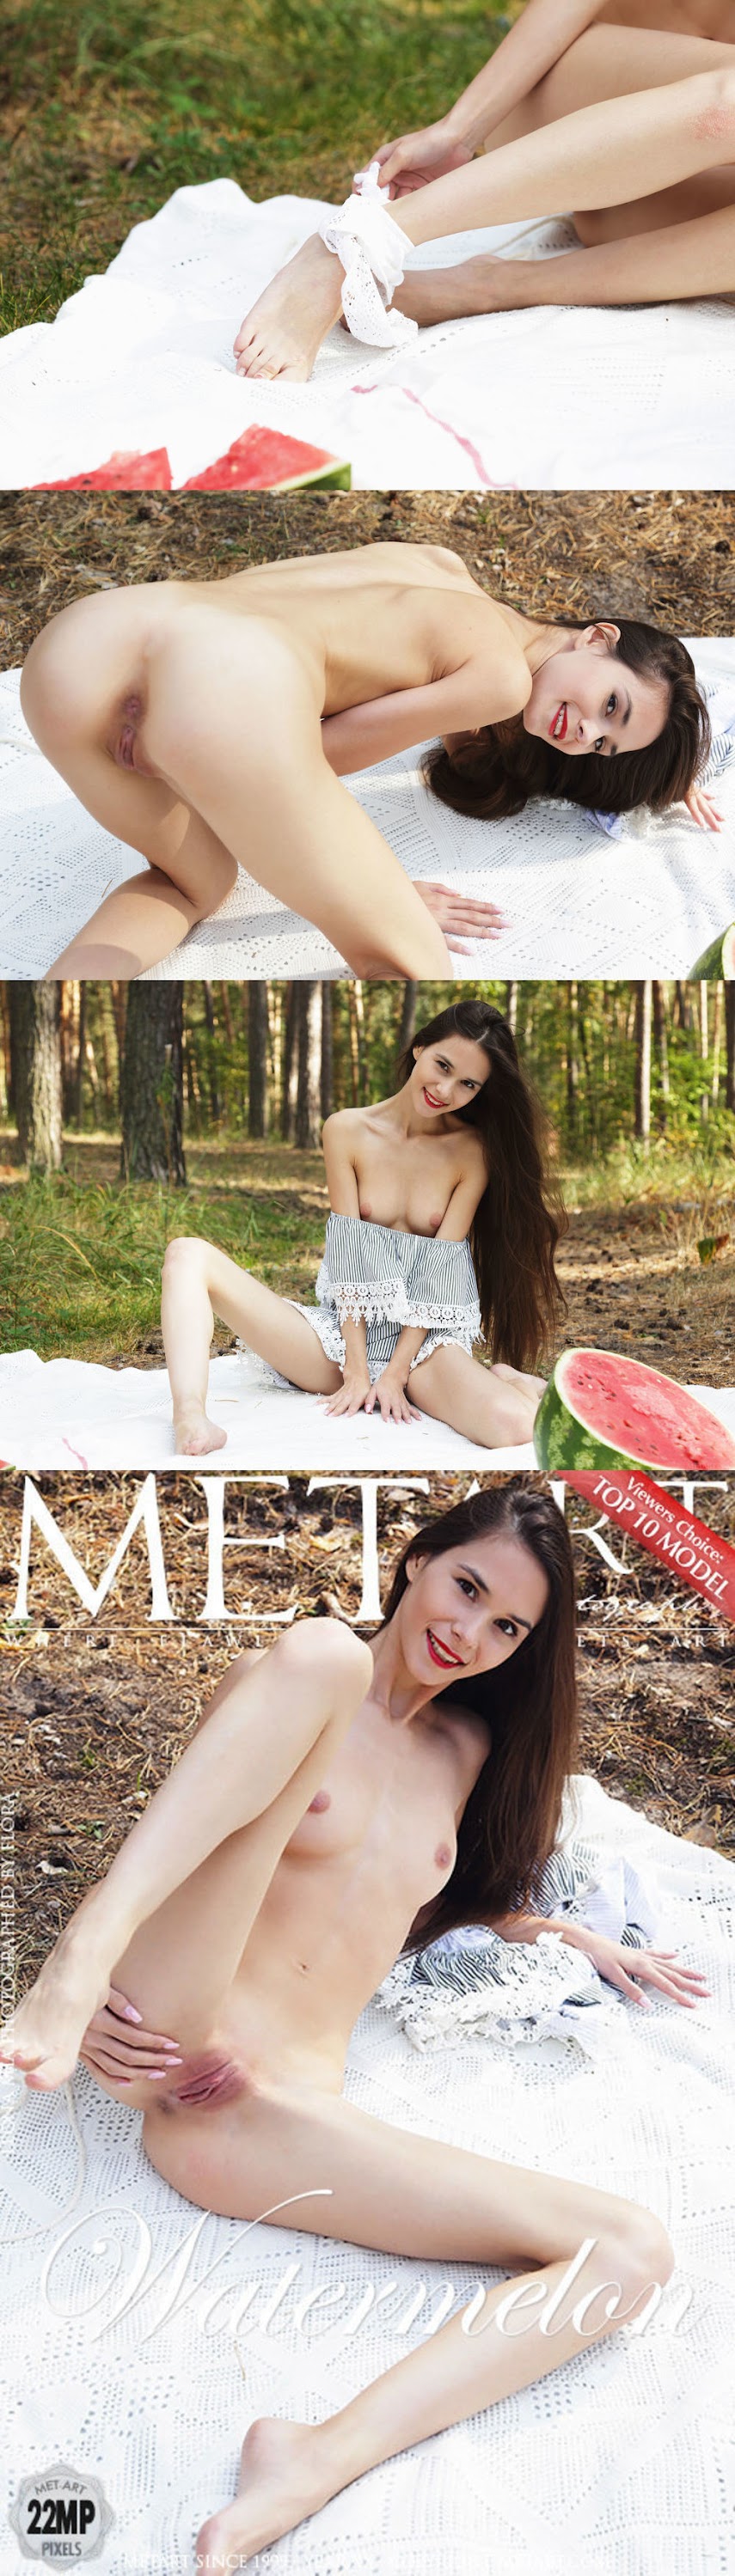 MetArt 2019-03-16 - Watermelon 82 3840x5760 sexy girls image jav